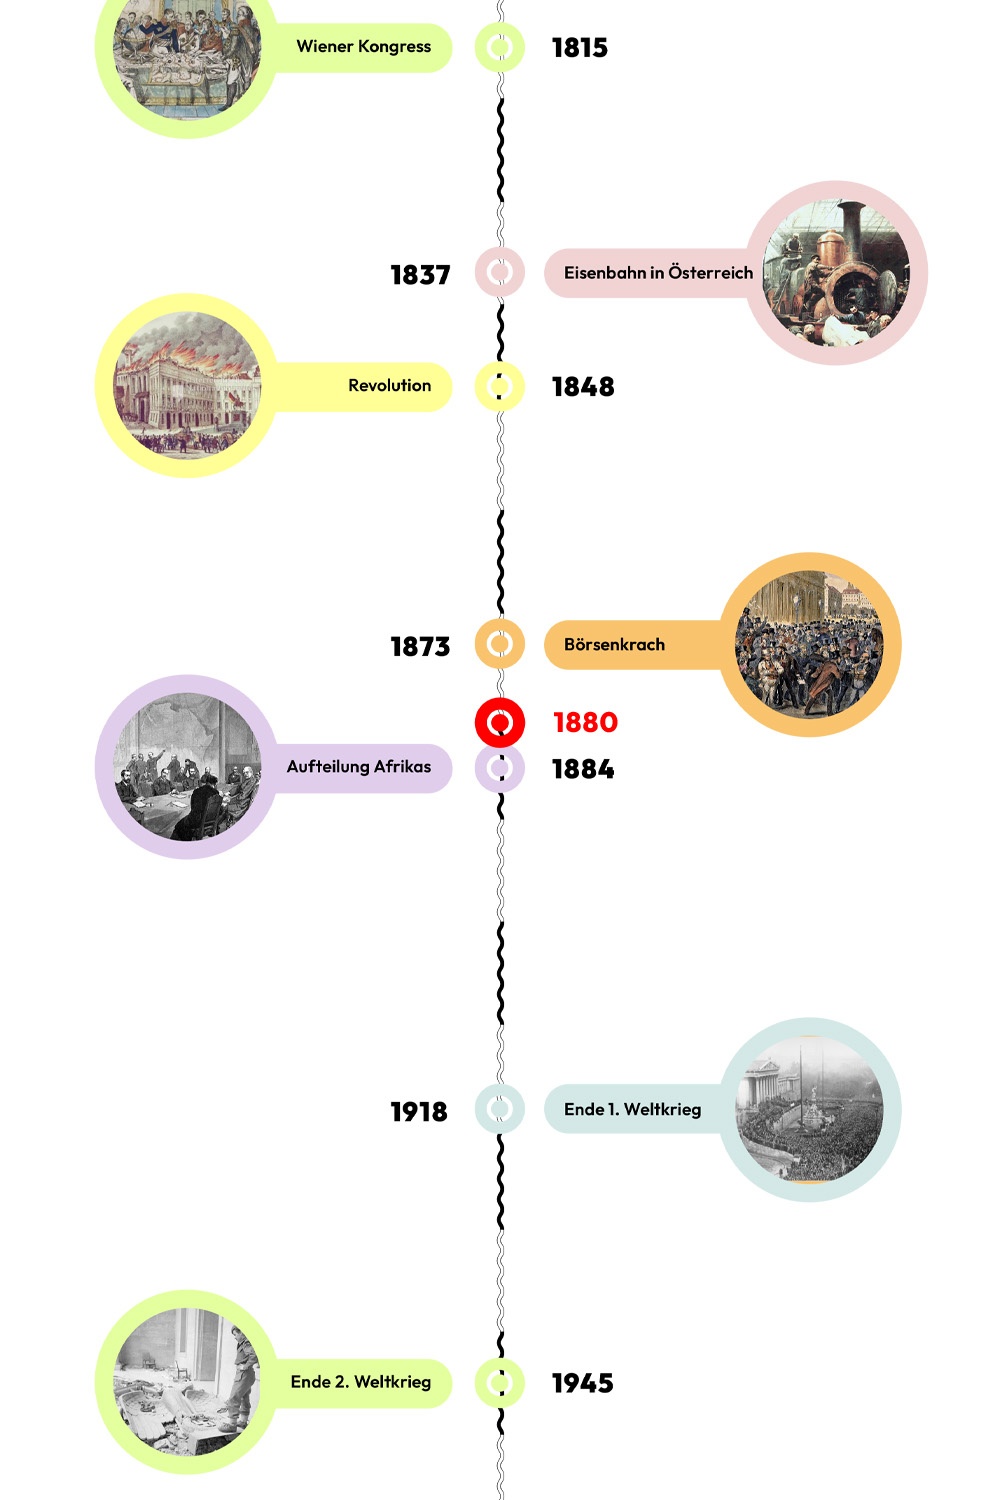 Zeitstrahl mit historischen Ereignissen - 1880 ist hervorgehoben © wasbishergeschah.at